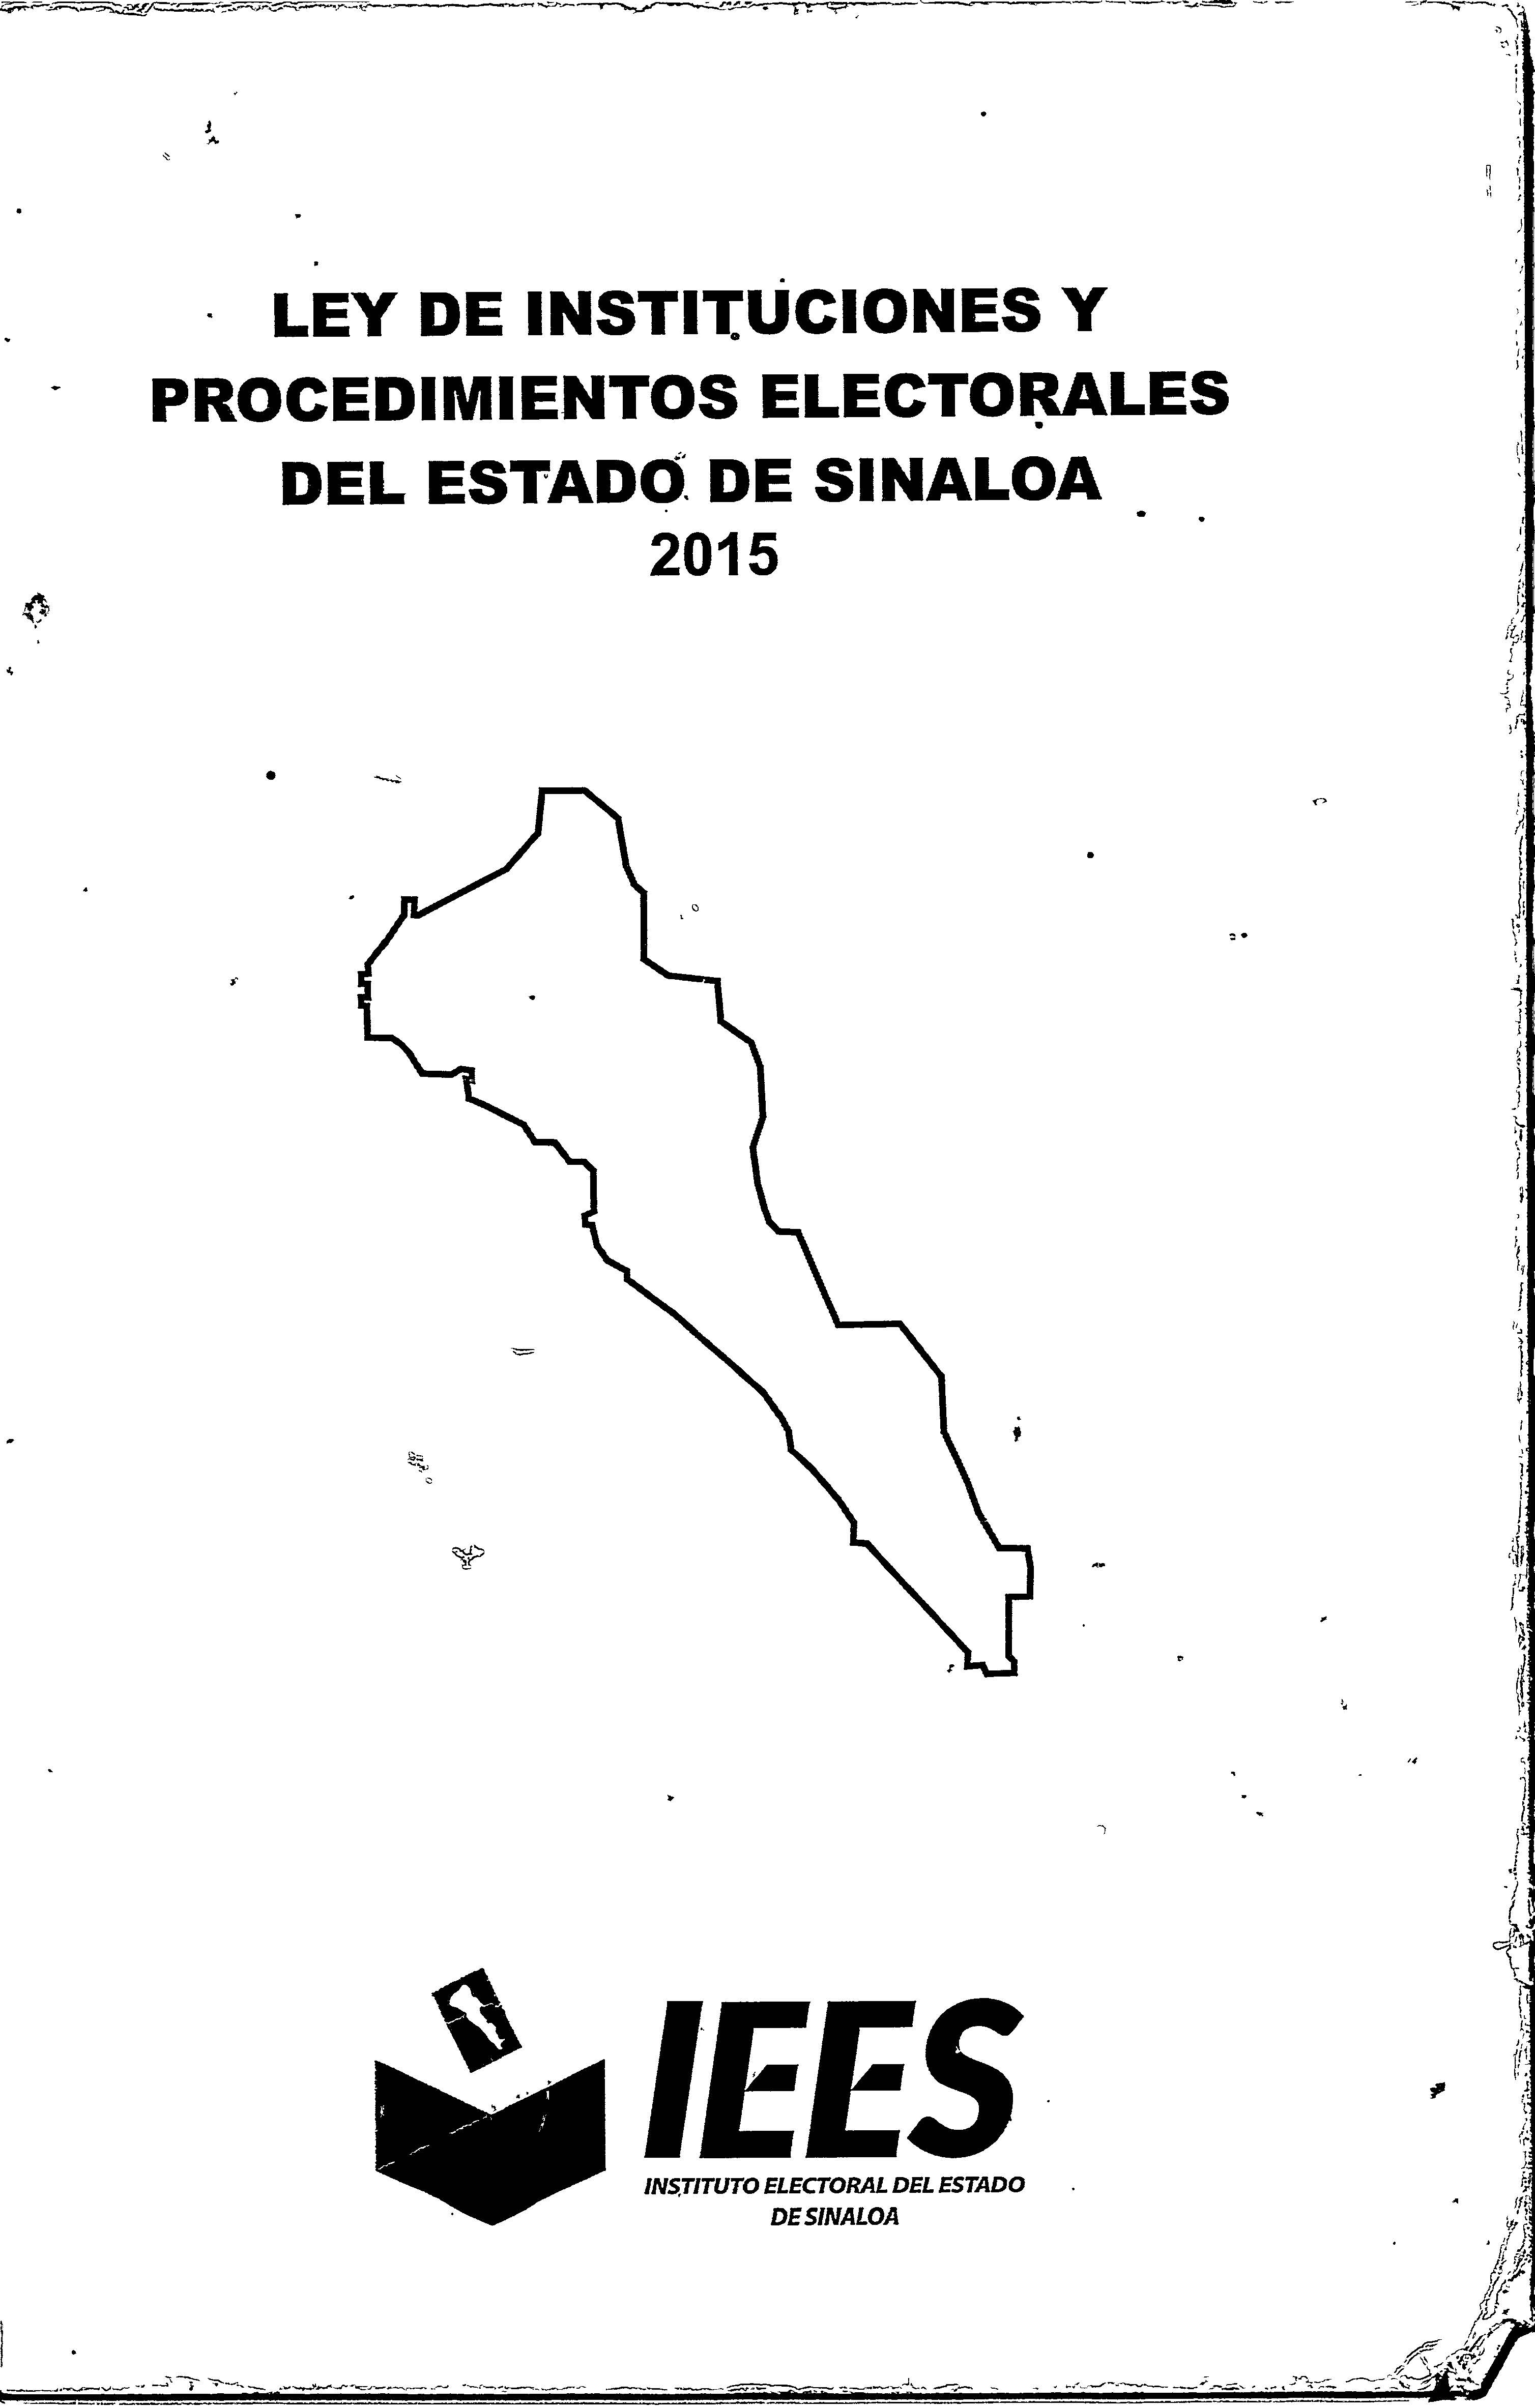 Ley Electoral del Estado de Sinaloa 2015